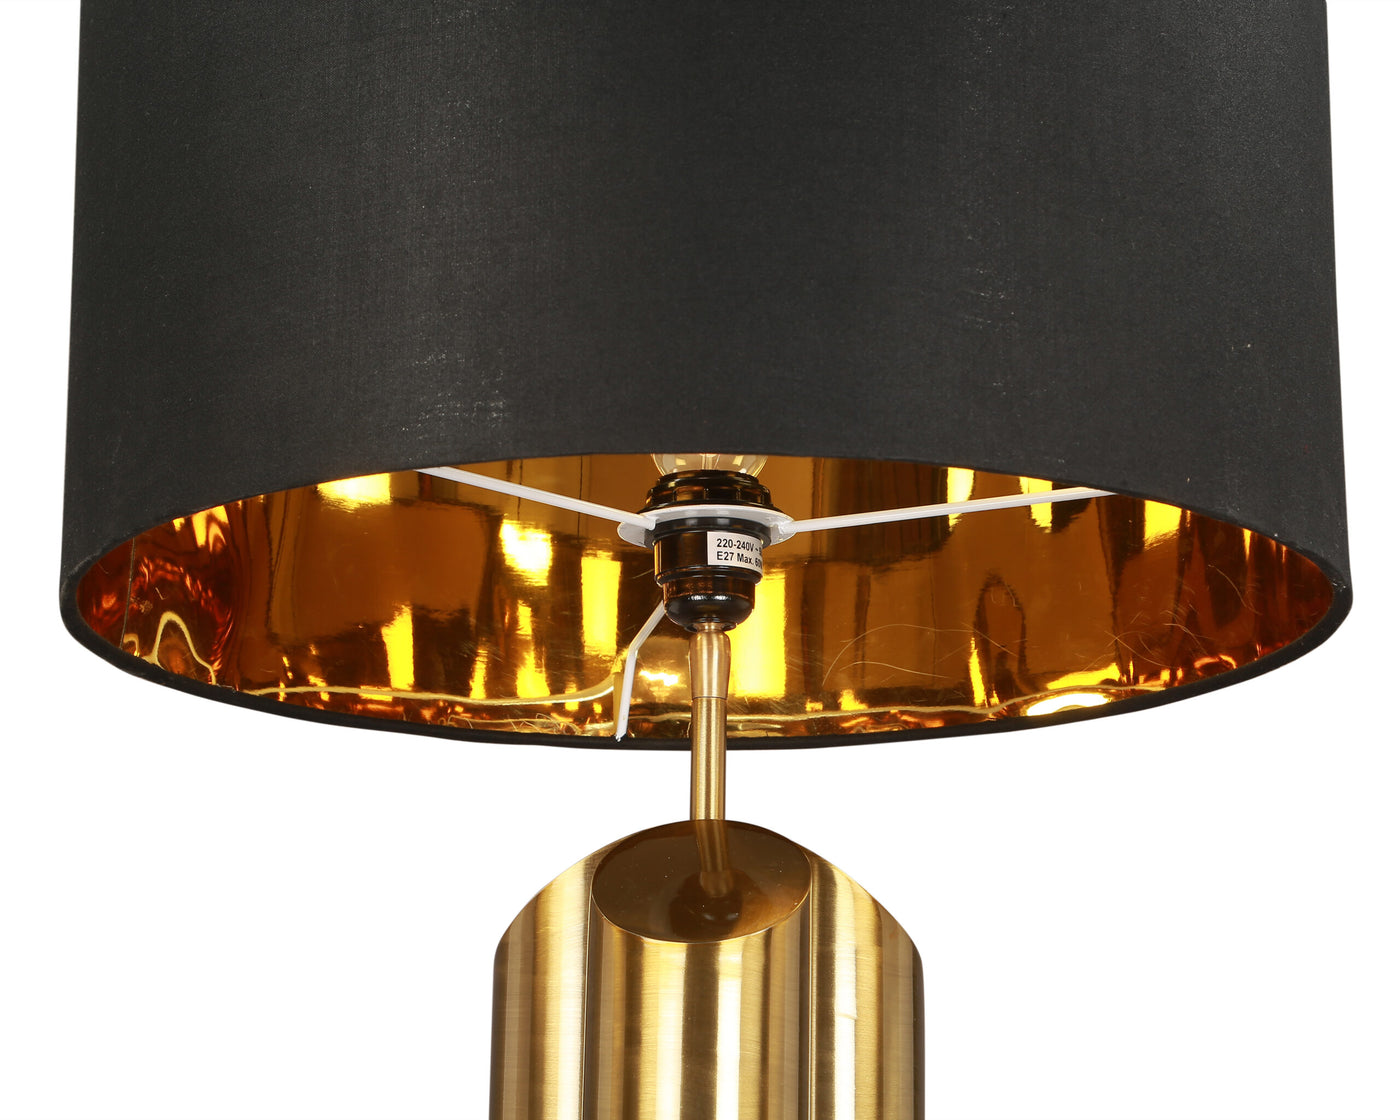 Obelisk Table Lamp - Brushed Brass & Black